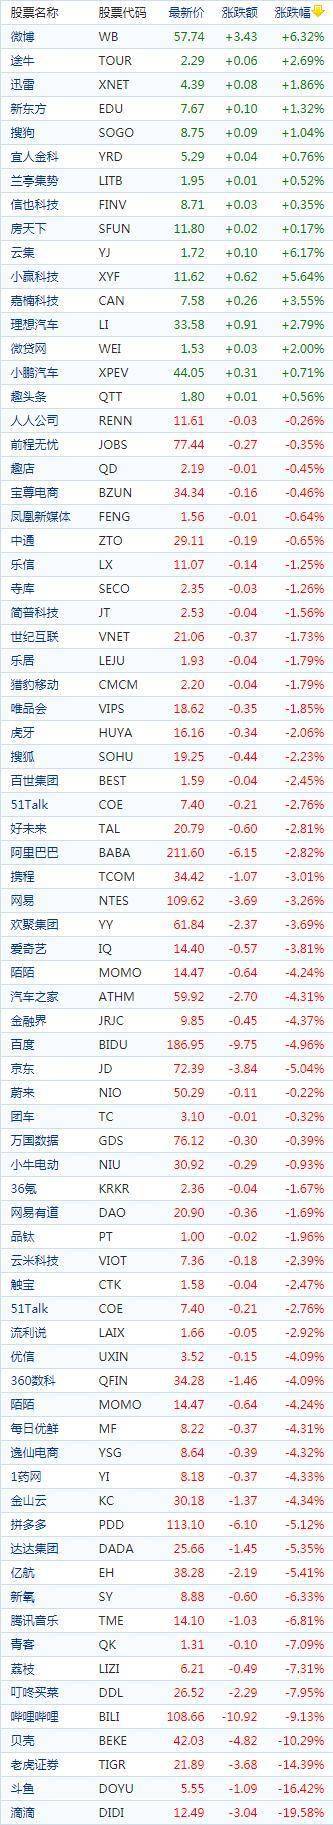 中国概念股周二收盘多数下跌 斗鱼、贝壳等热门中概股多数重挫